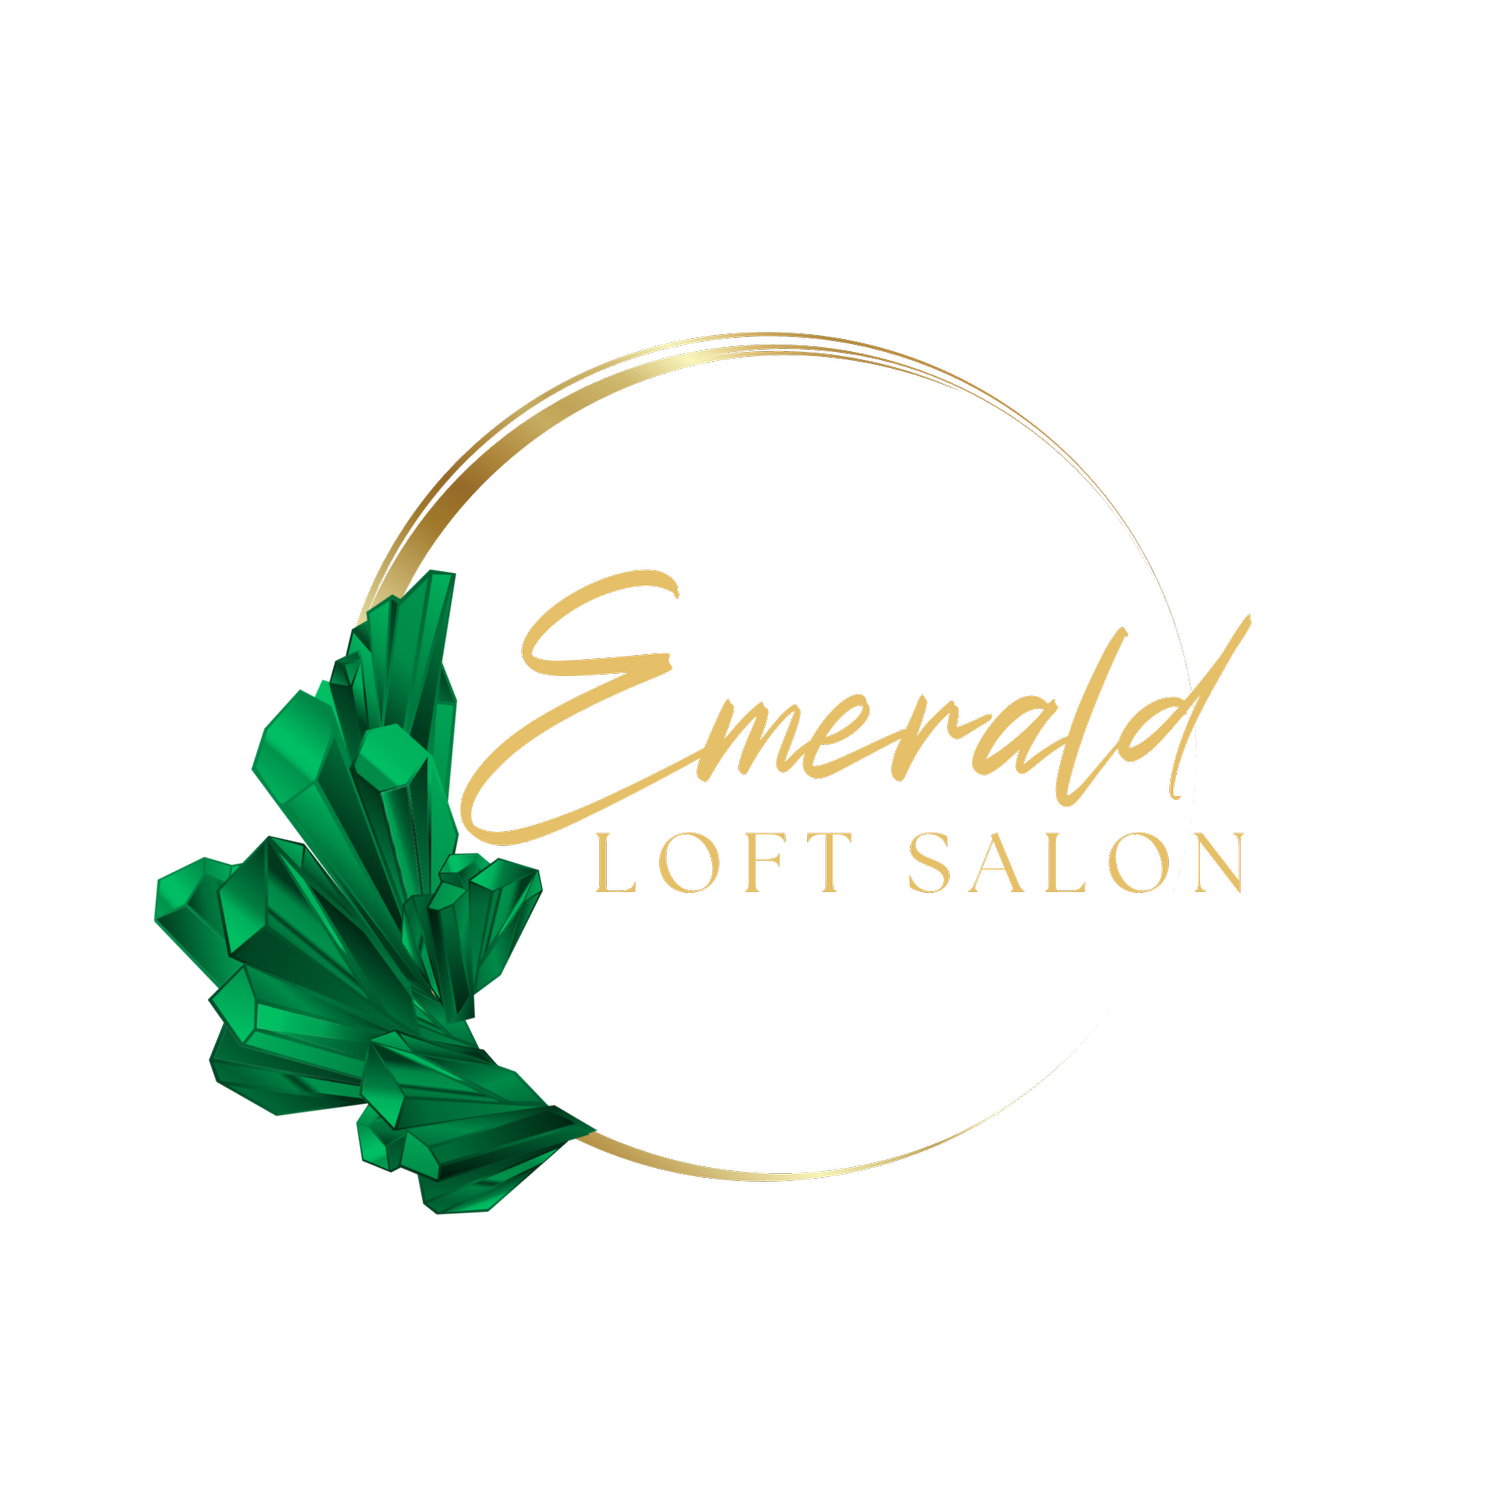 Emerald Loft Salon